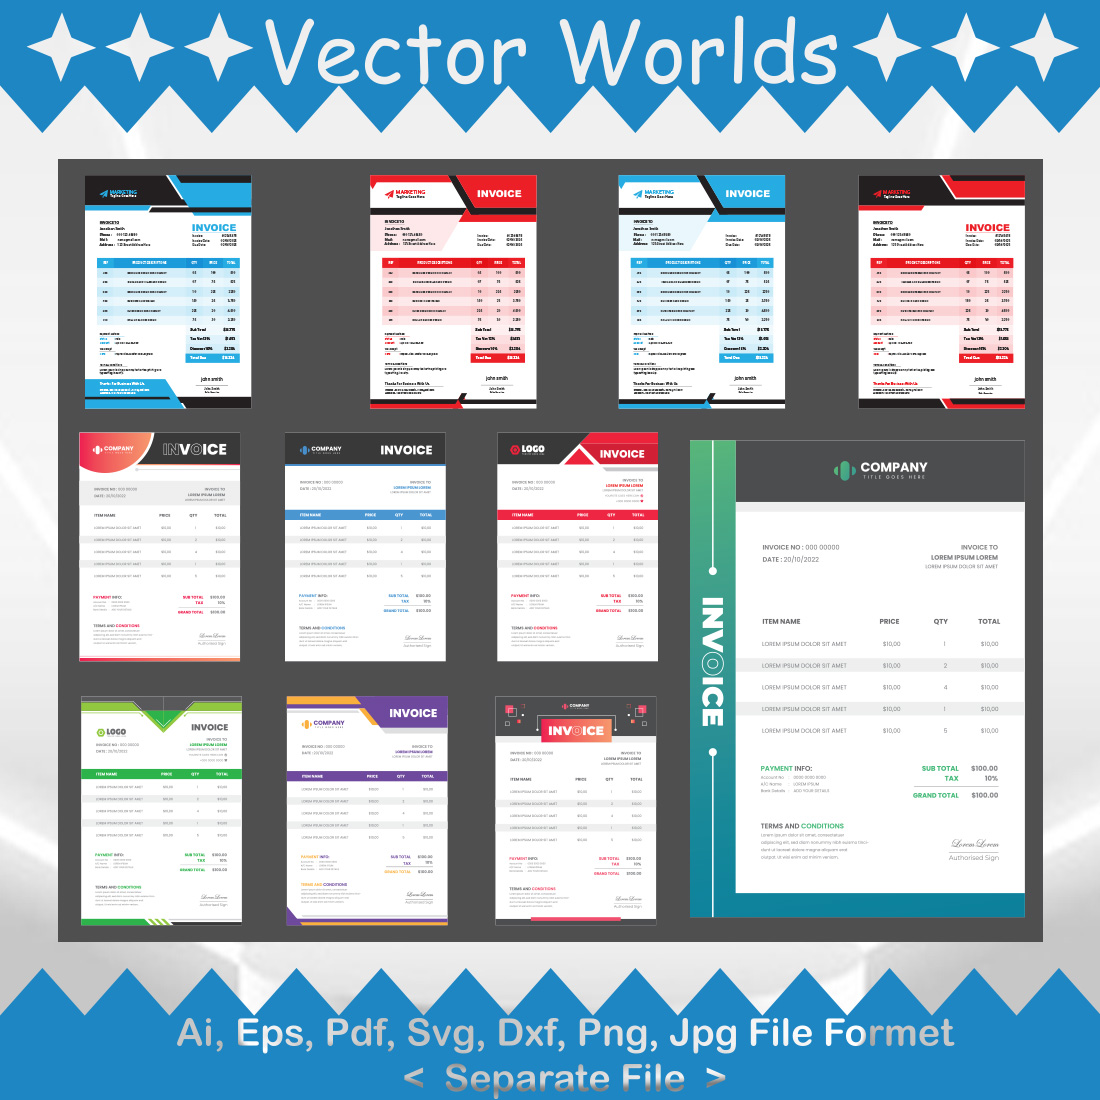 Invoice SVG Vector Design cover image.